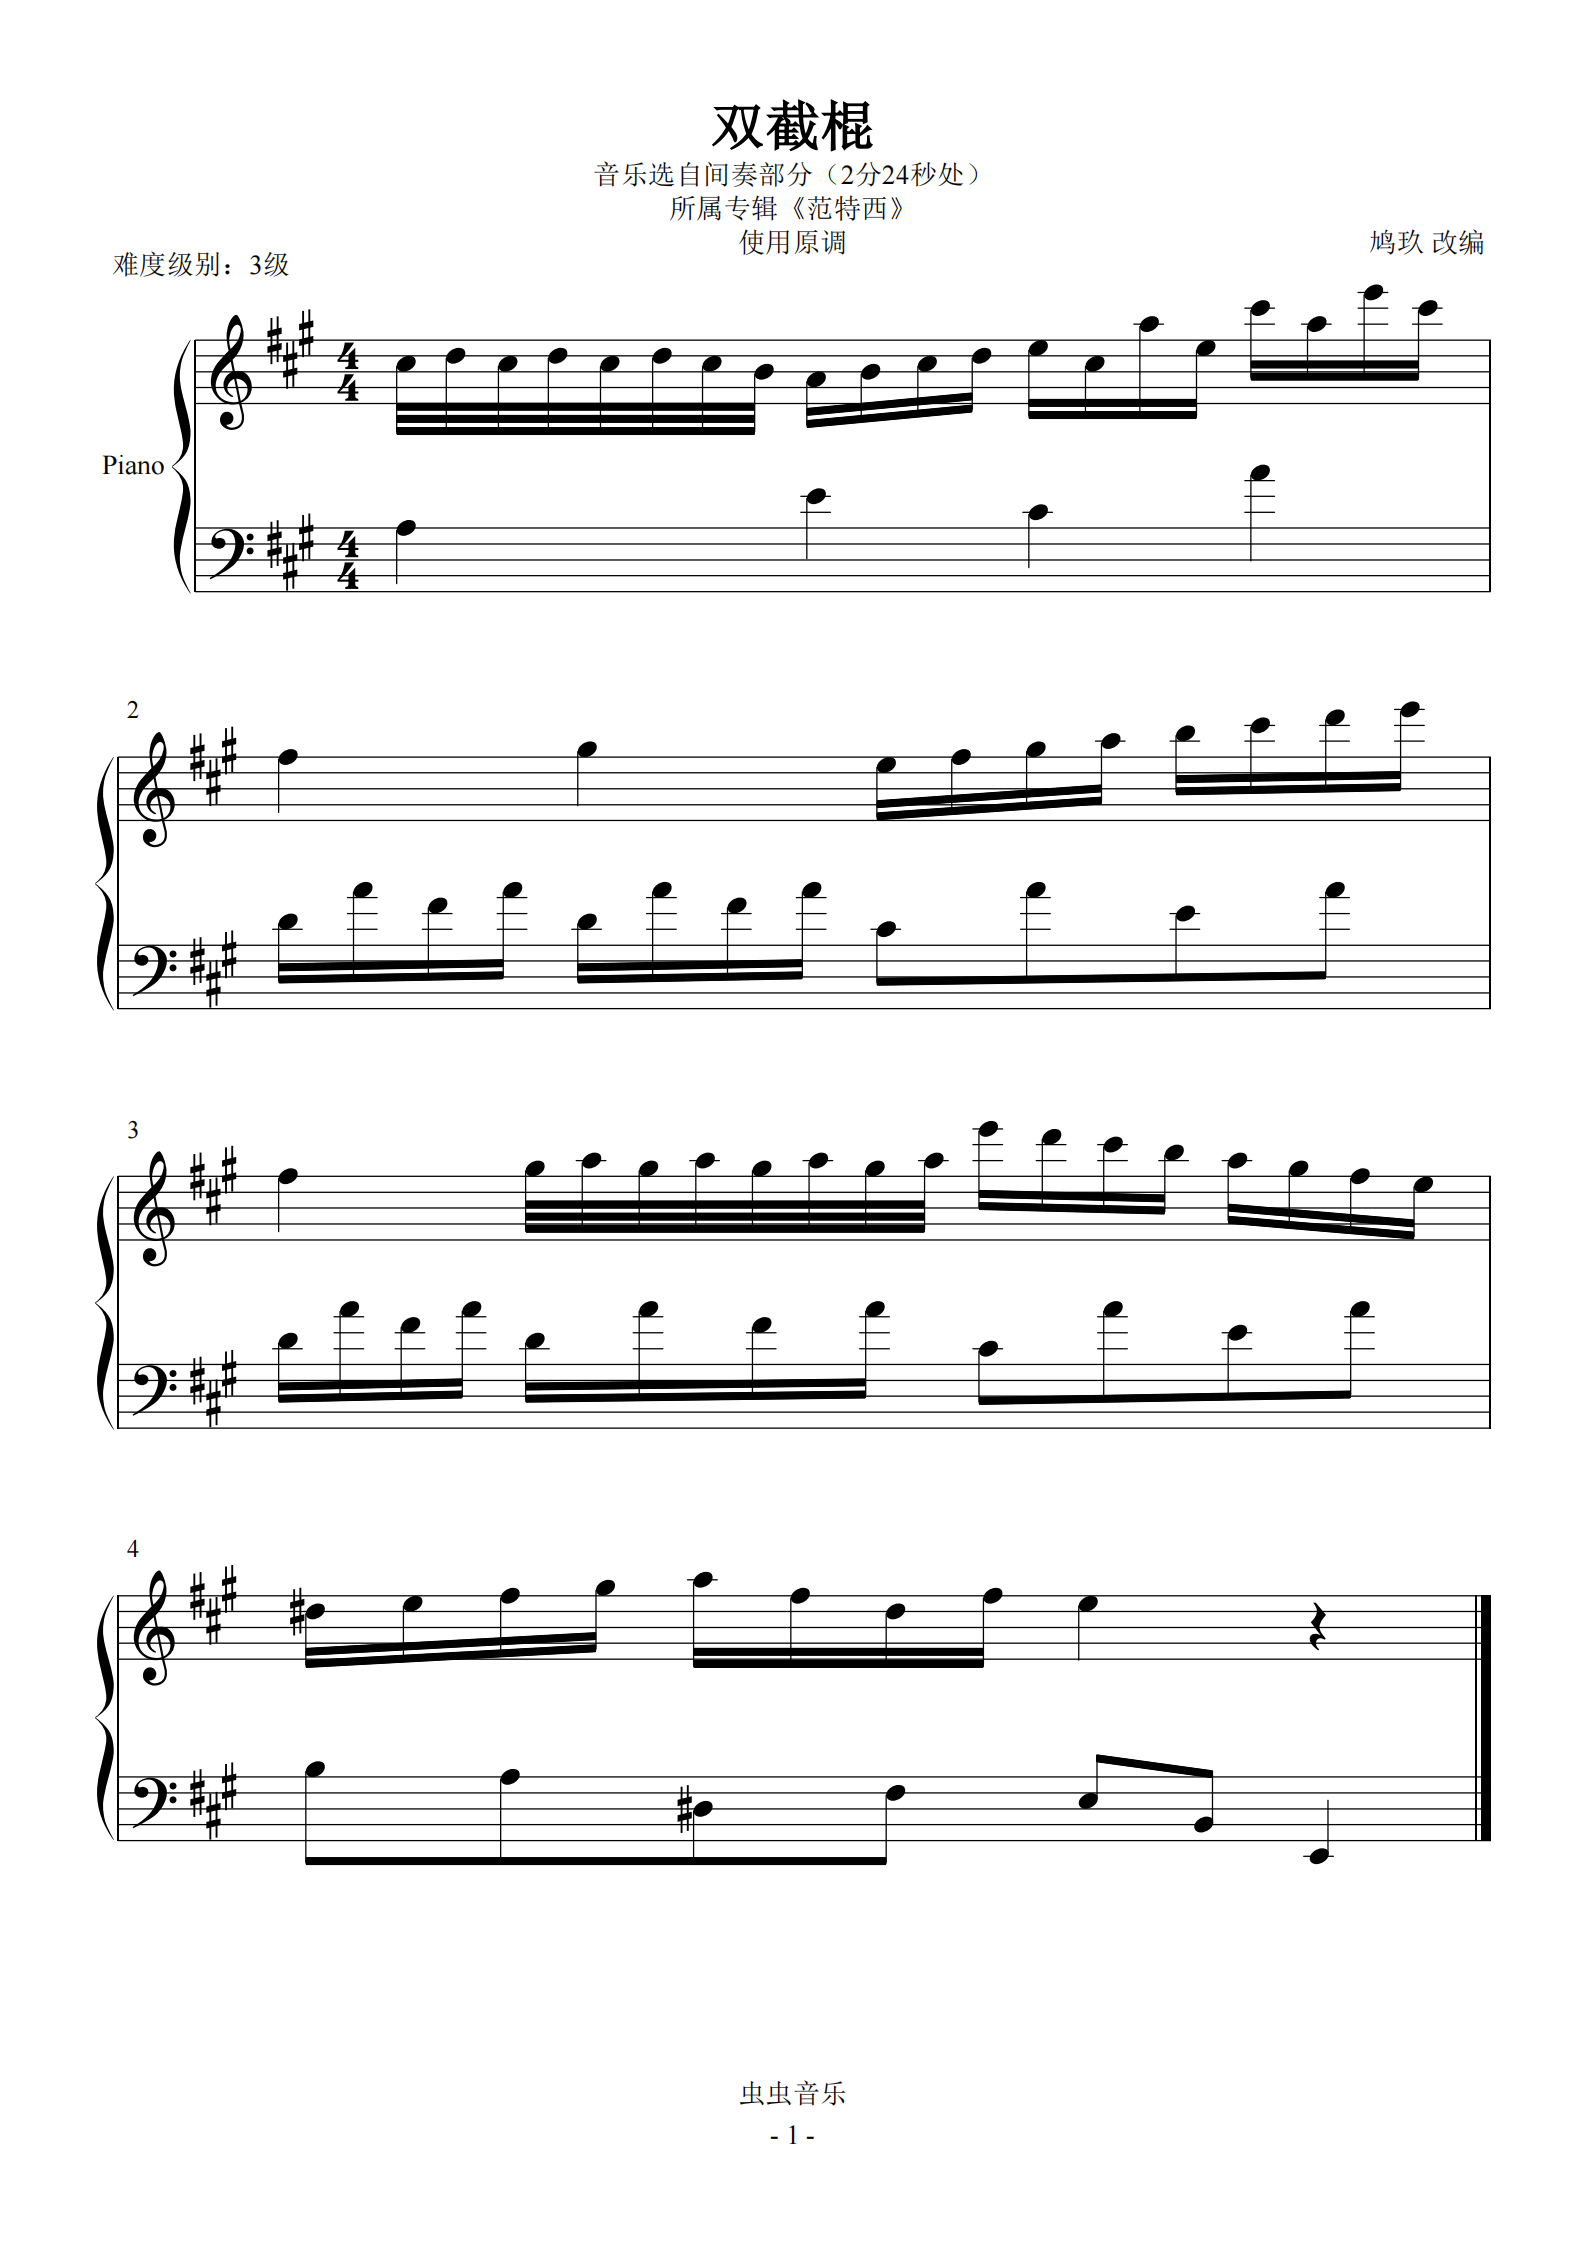 双截棍（超级总谱）钢琴曲谱，于斯课堂精心出品。于斯曲谱大全，钢琴谱，简谱，五线谱尽在其中。